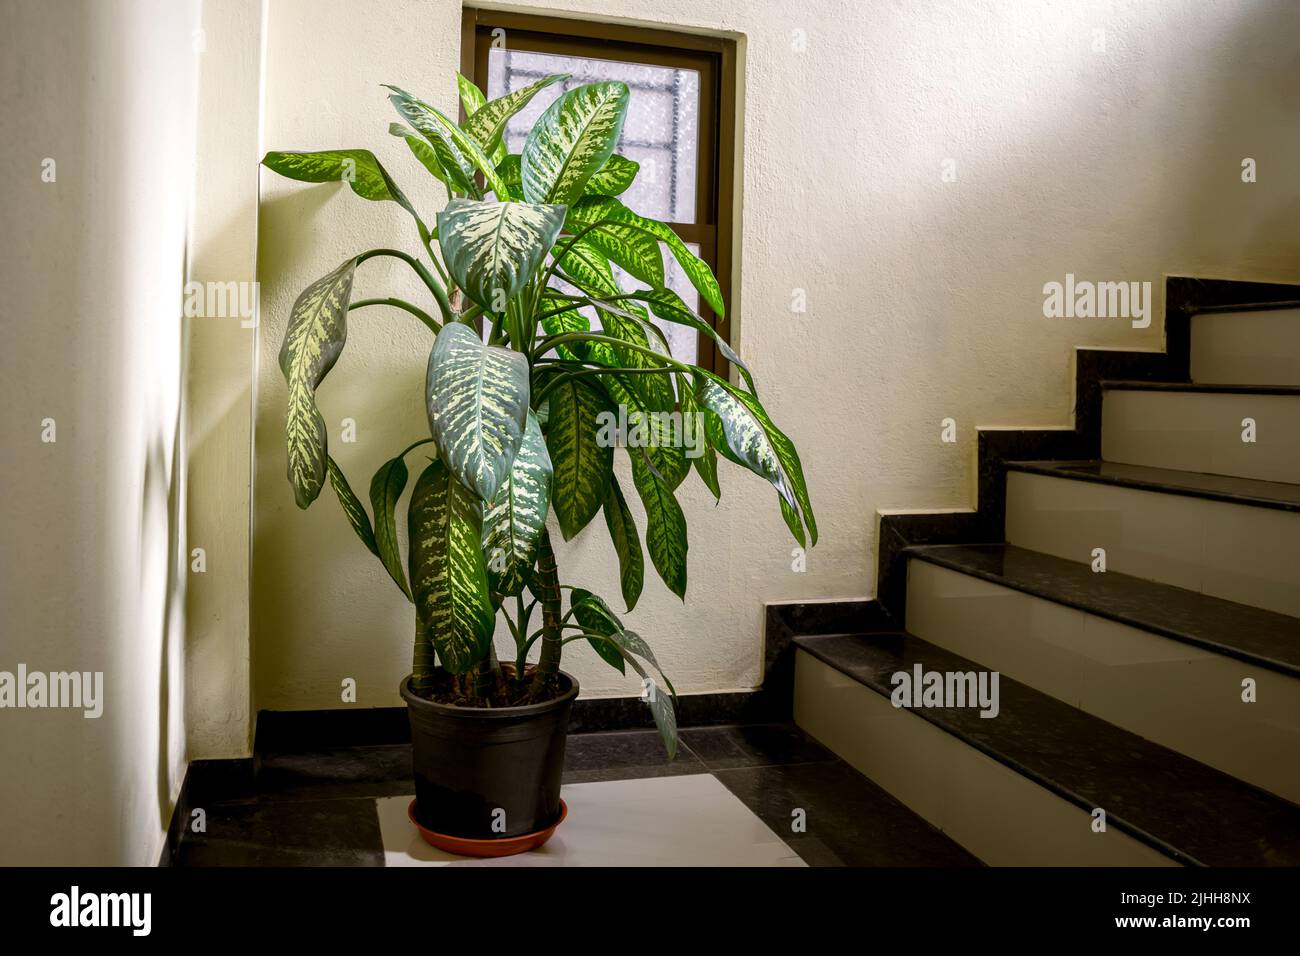 Plante de Dieffenbachia en pot avec des patchs verts et blancs sur les feuilles placées à l'escalier. Dieffenbachia, communément connu sous le nom de canne muette ou lys léopards. Banque D'Images